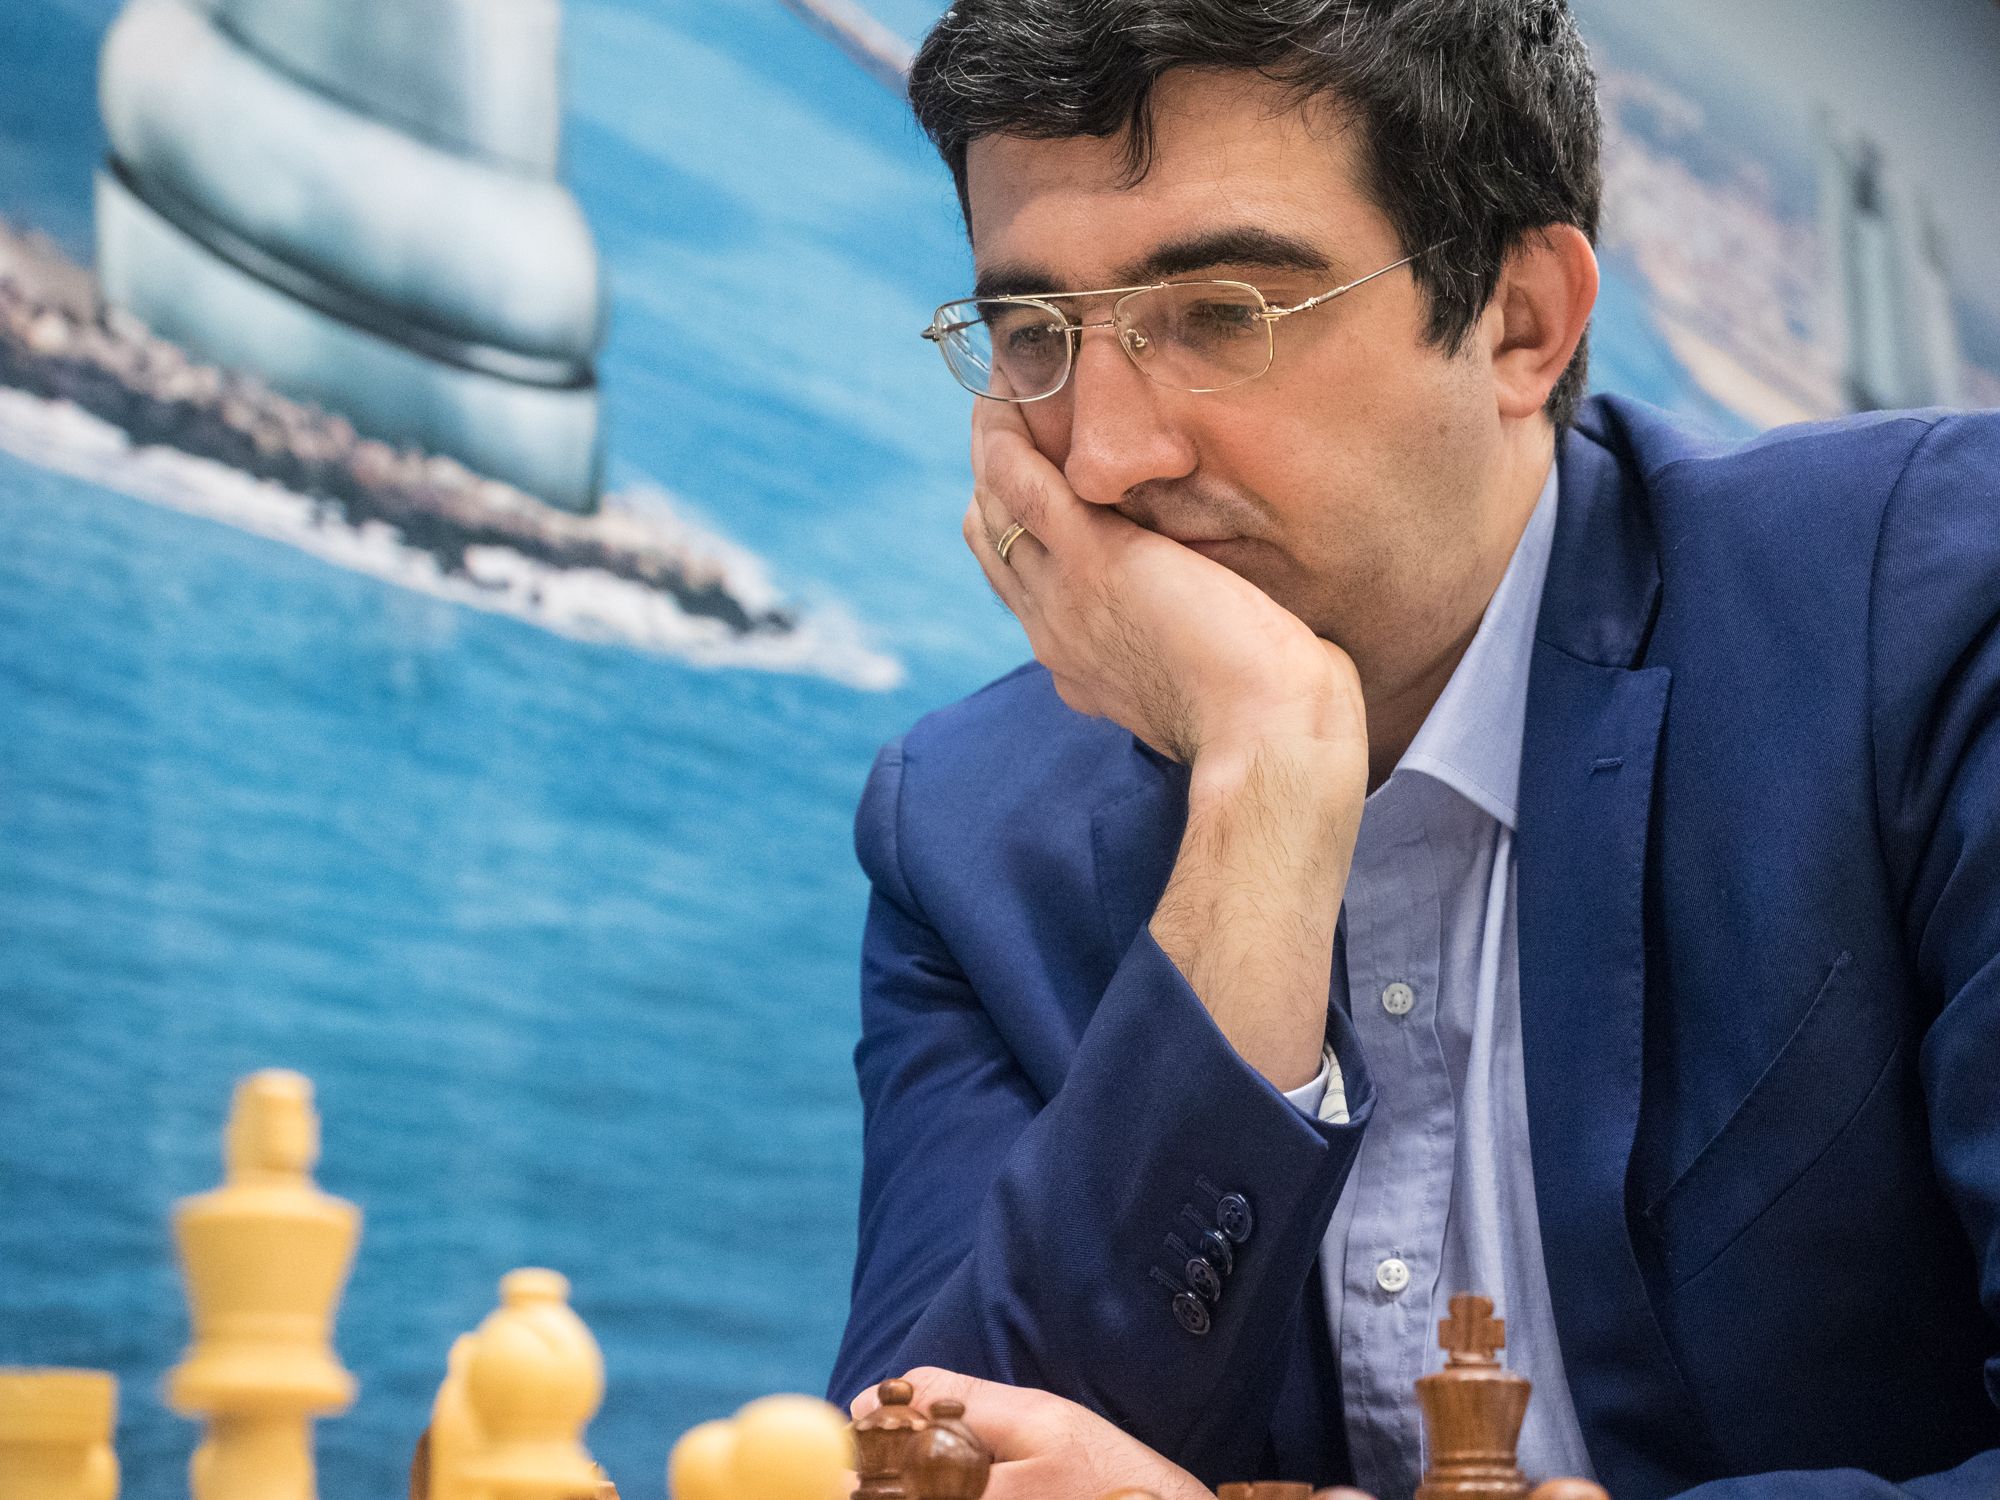 Best Chess Games of all Time - Vladimir Kramnik 